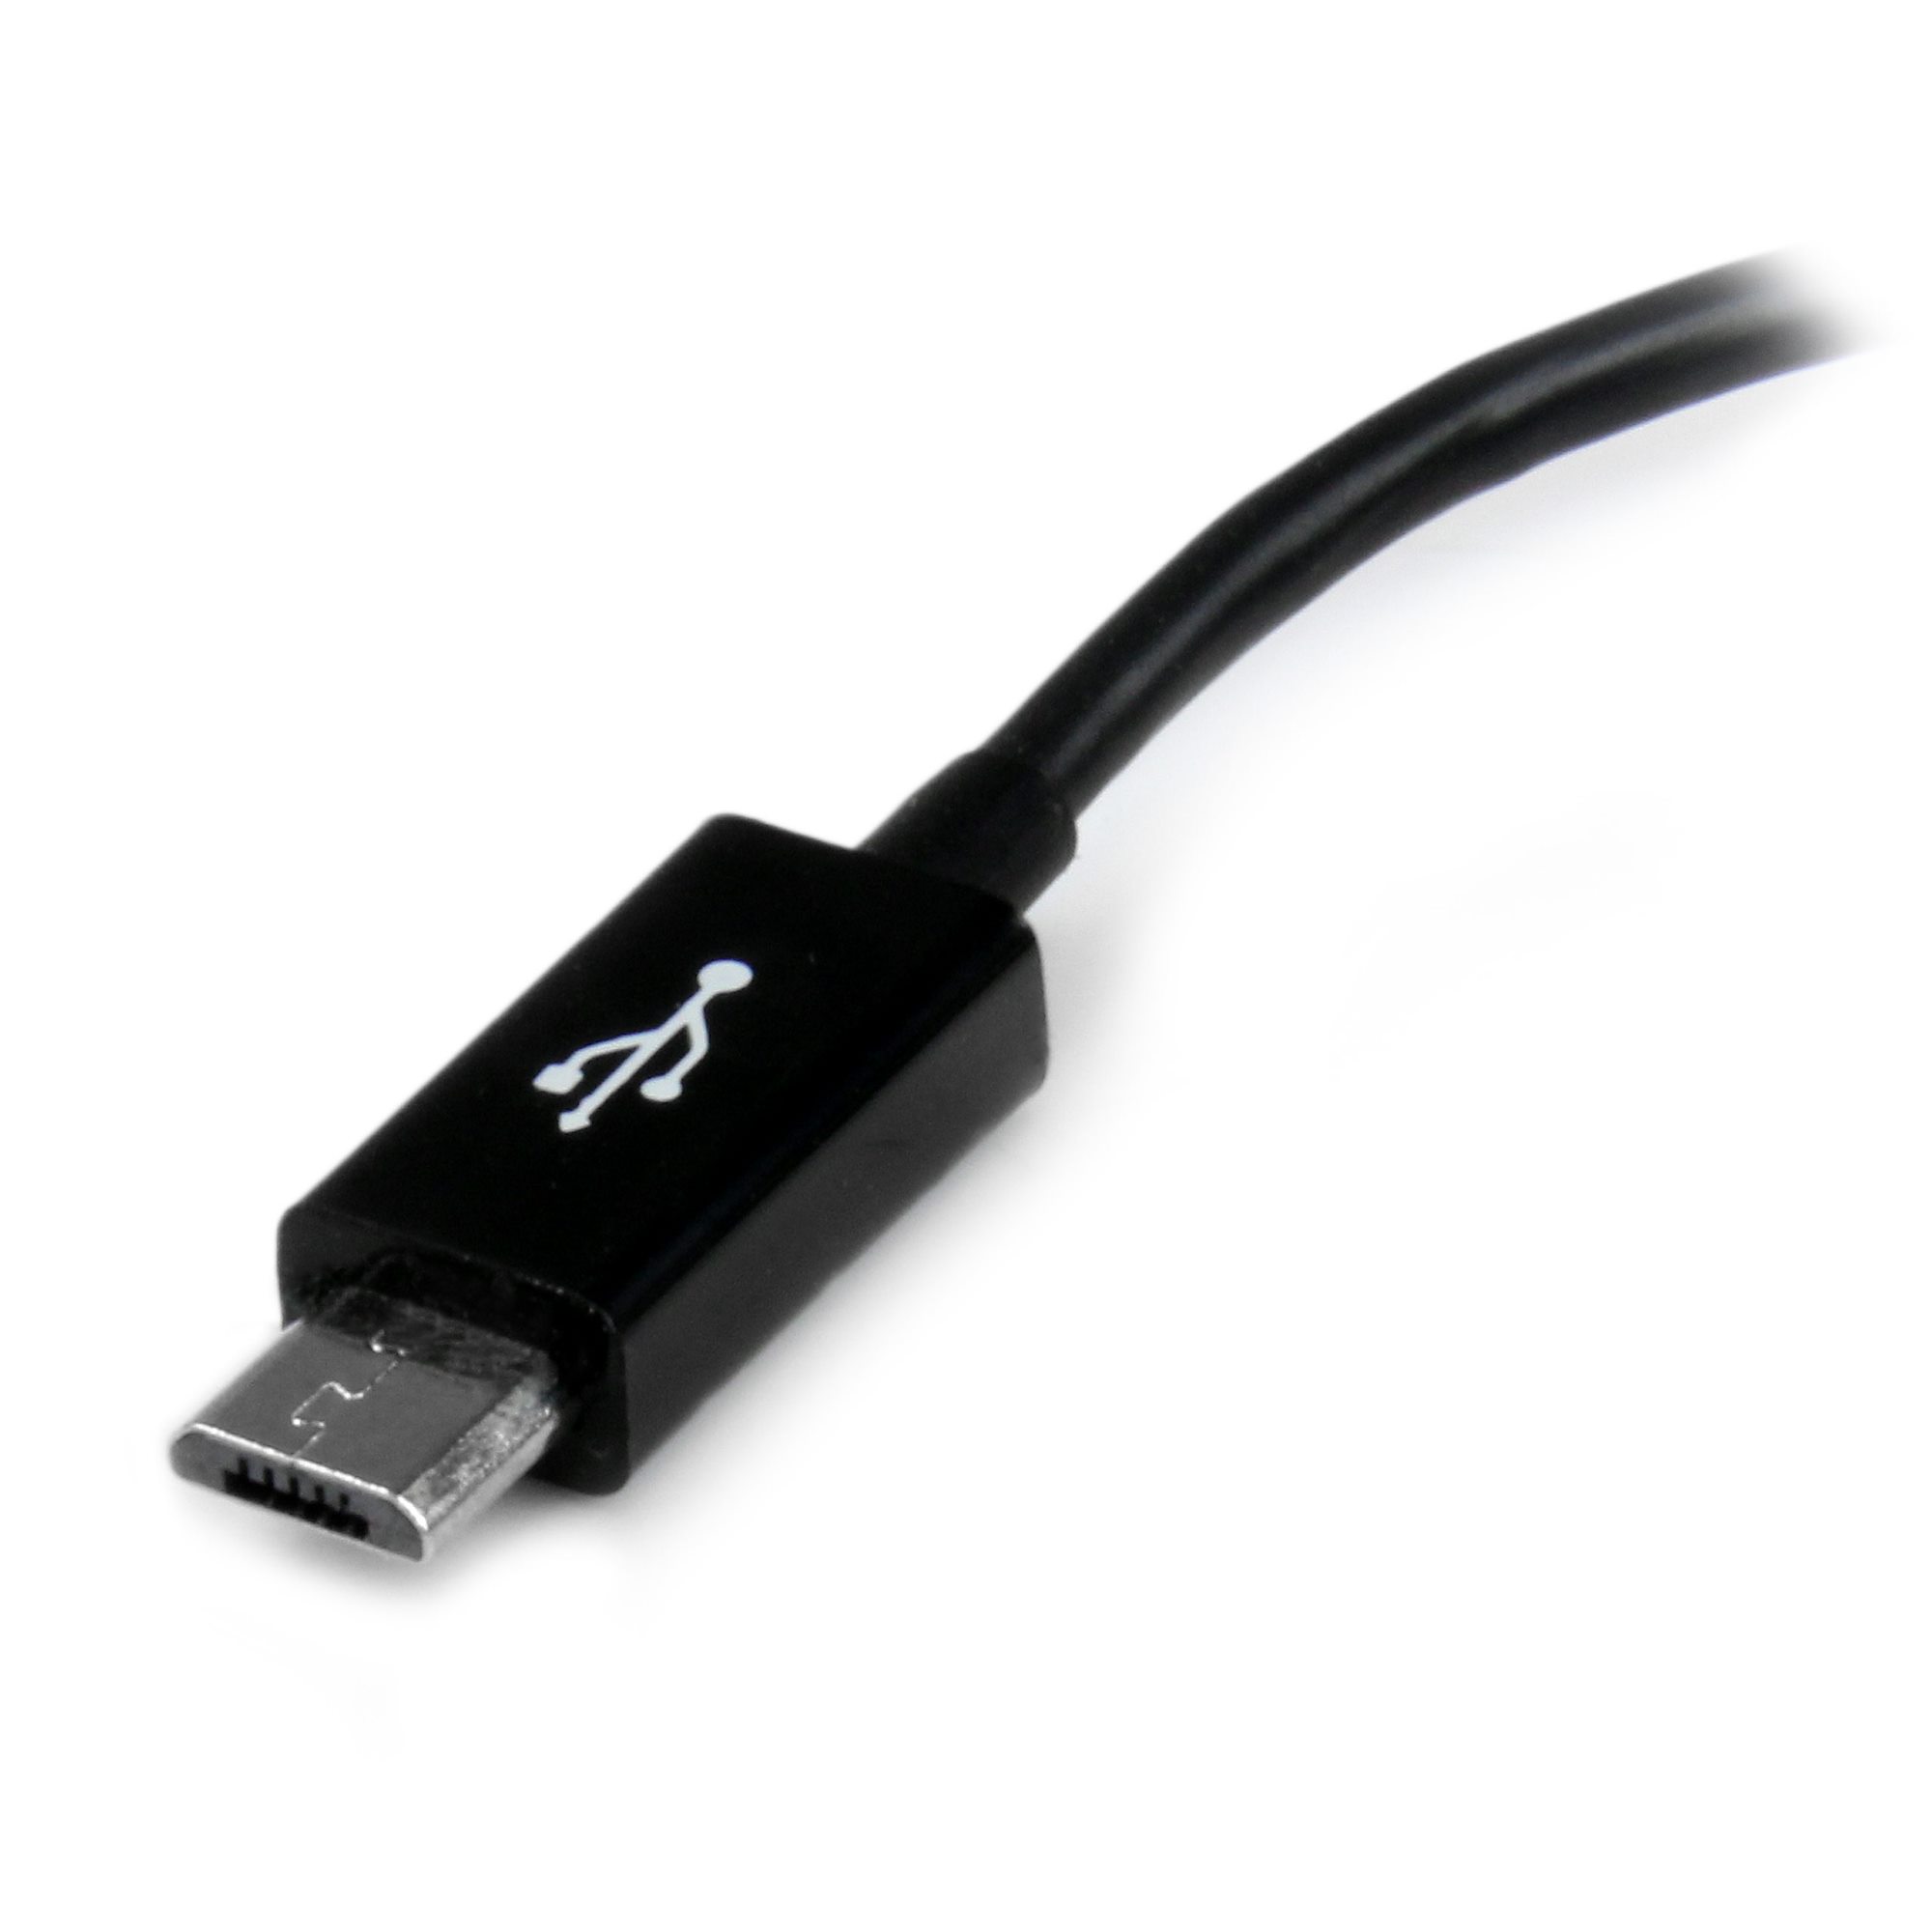 USBマイクロB OTG変換アダプタ 12cm Type-A(メス) - Micro-B(オス)